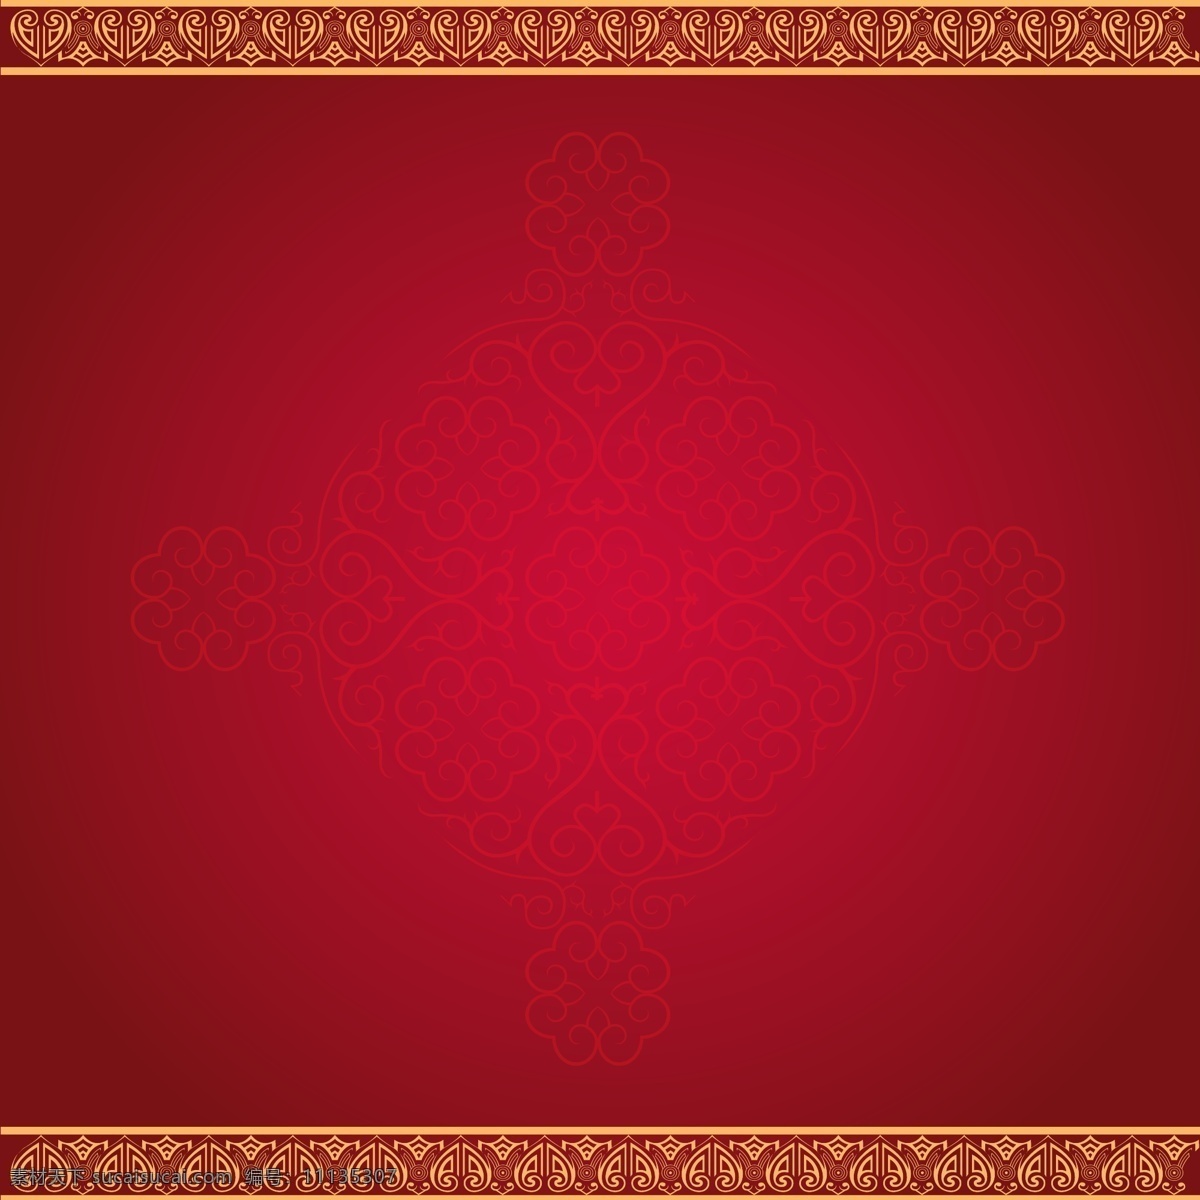 红色 中式 复古 背景 矢量图 底纹 背景图 设计素材 幕布